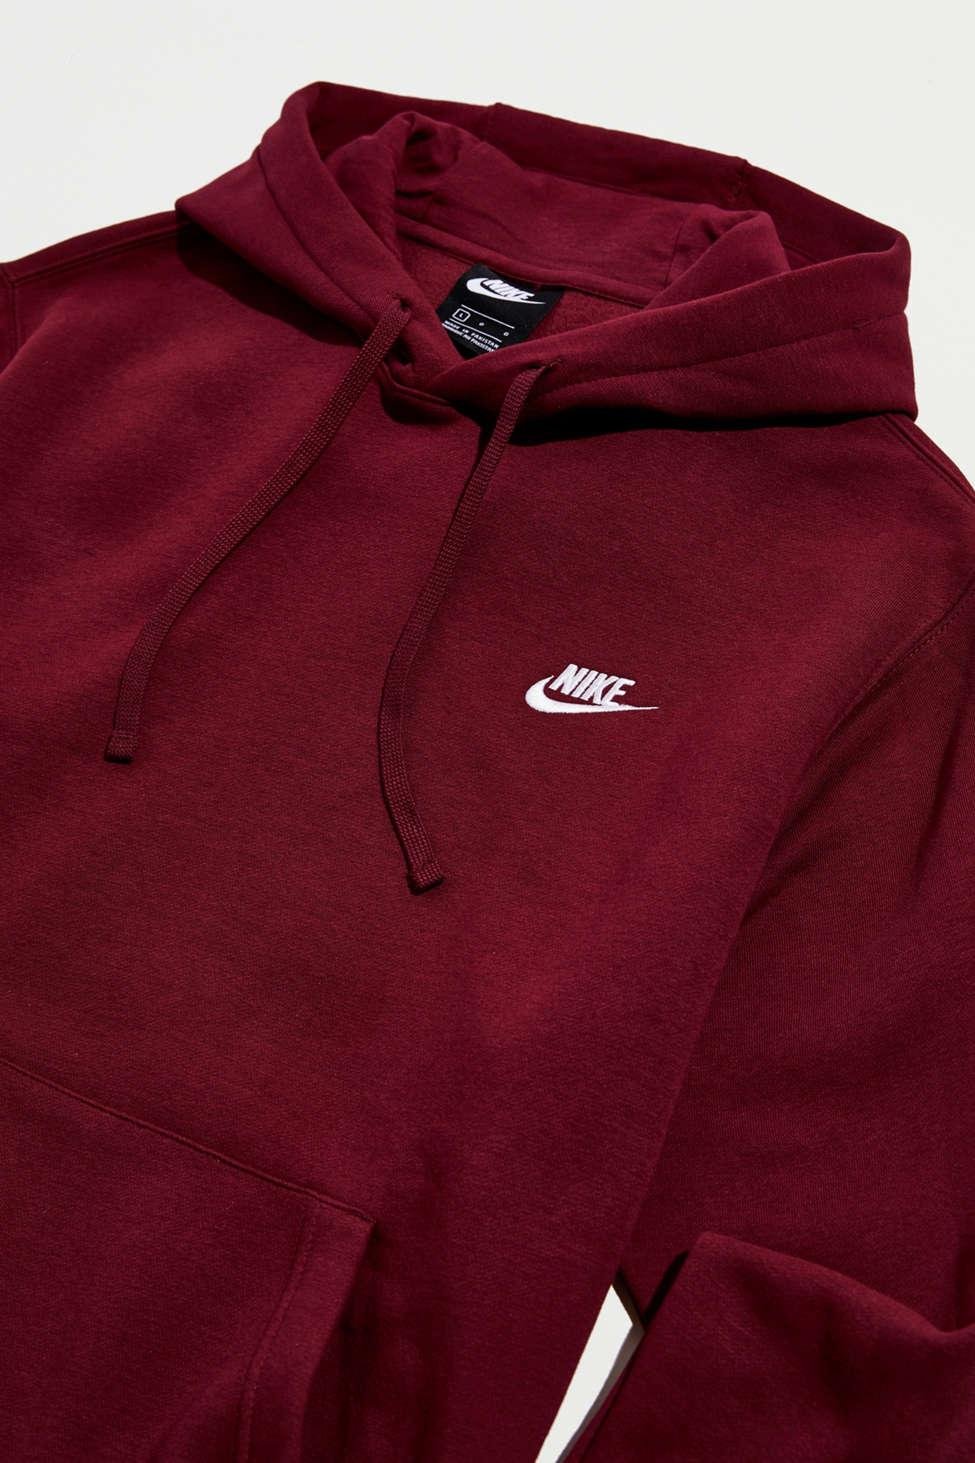 Nike Sportswear Club Fleece Hoodie Sweatshirt in Maroon (Red) for Men - Lyst